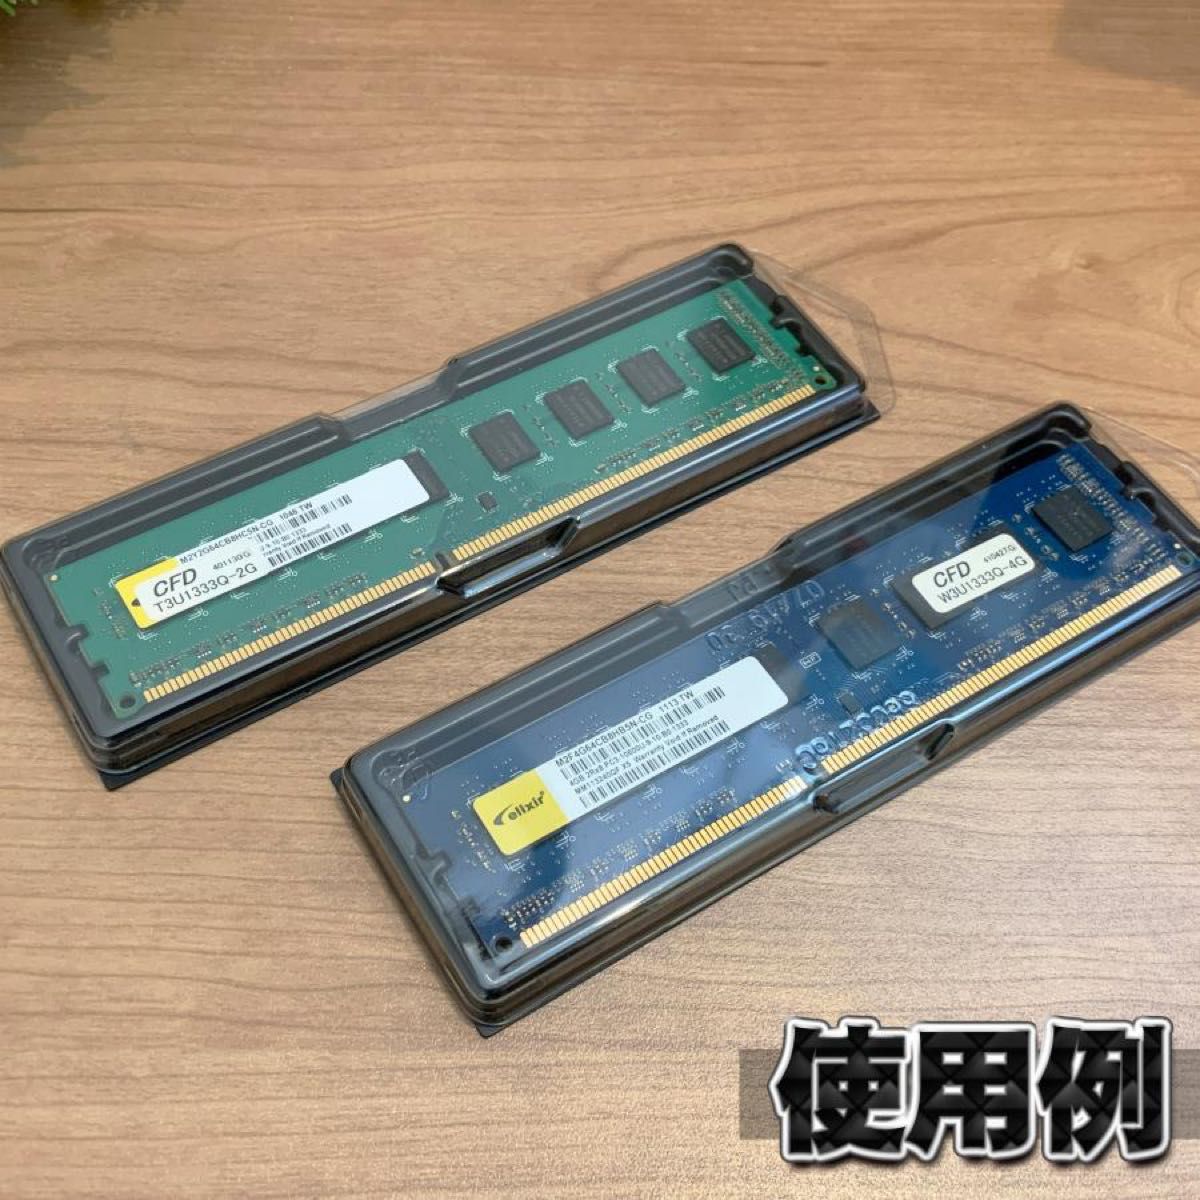 【 DDR4 対応 】蓋付き PC メモリー シェルケース DIMM 用10枚セット